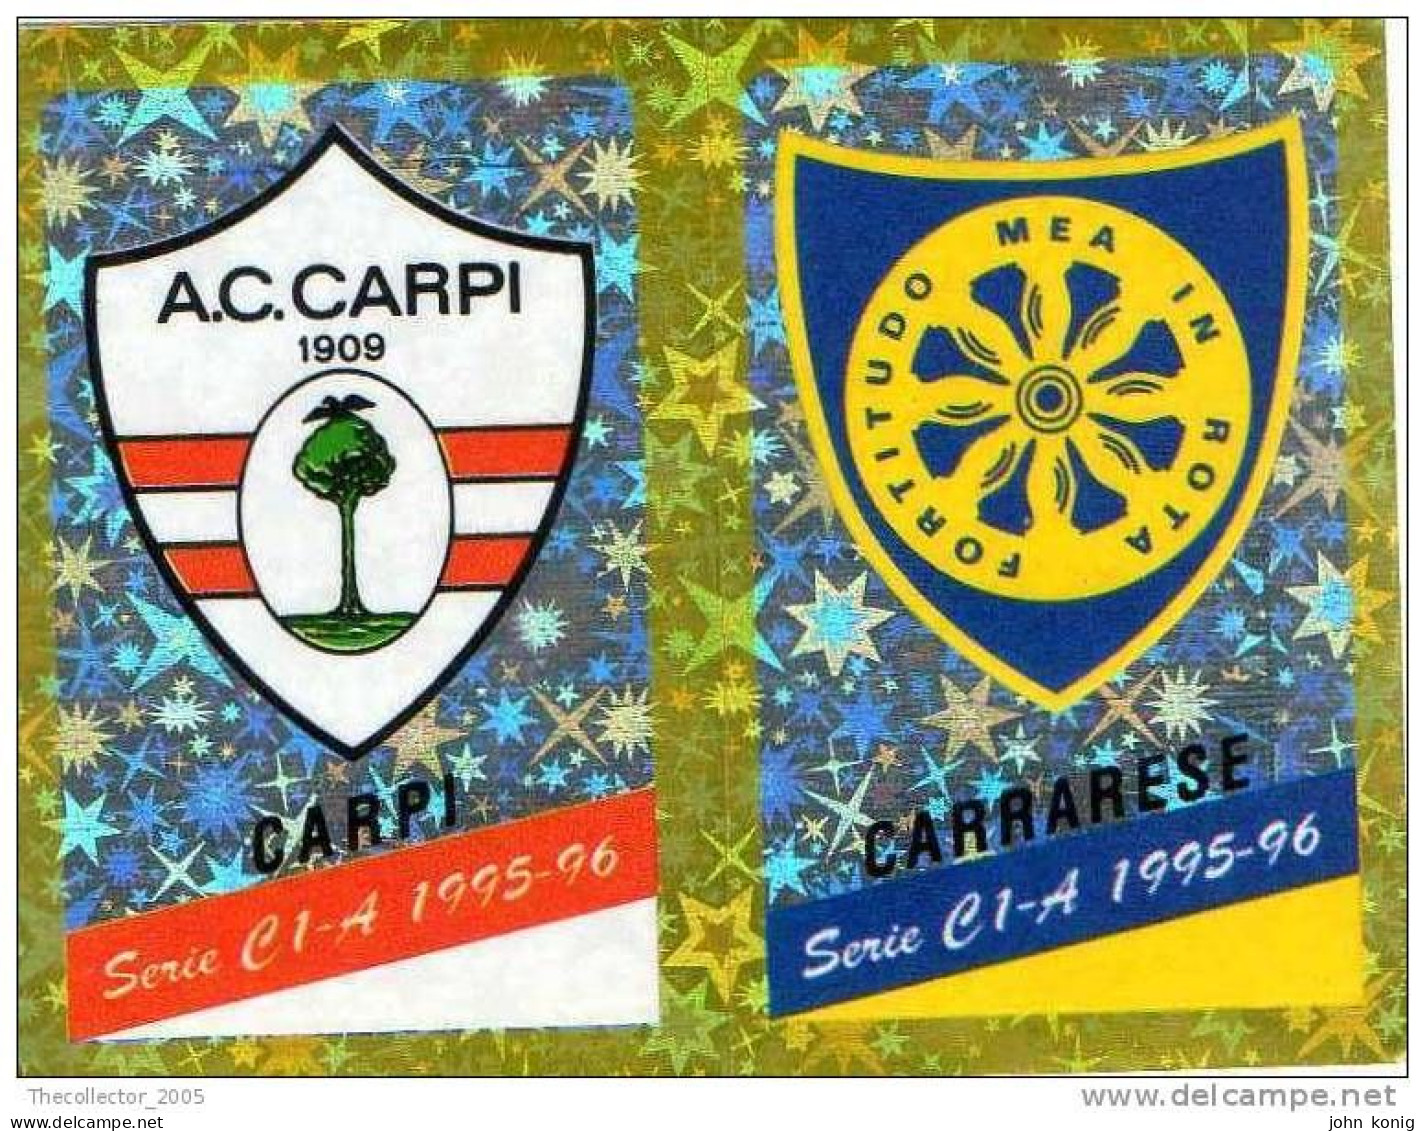 CALCIATORI - CALCIO Figurine Panini-calciatori 1995-96-n.527ab-scudetto Carpi-Carrarese (prismatico) - NUOVA-MAI INCOLLA - Edizione Italiana